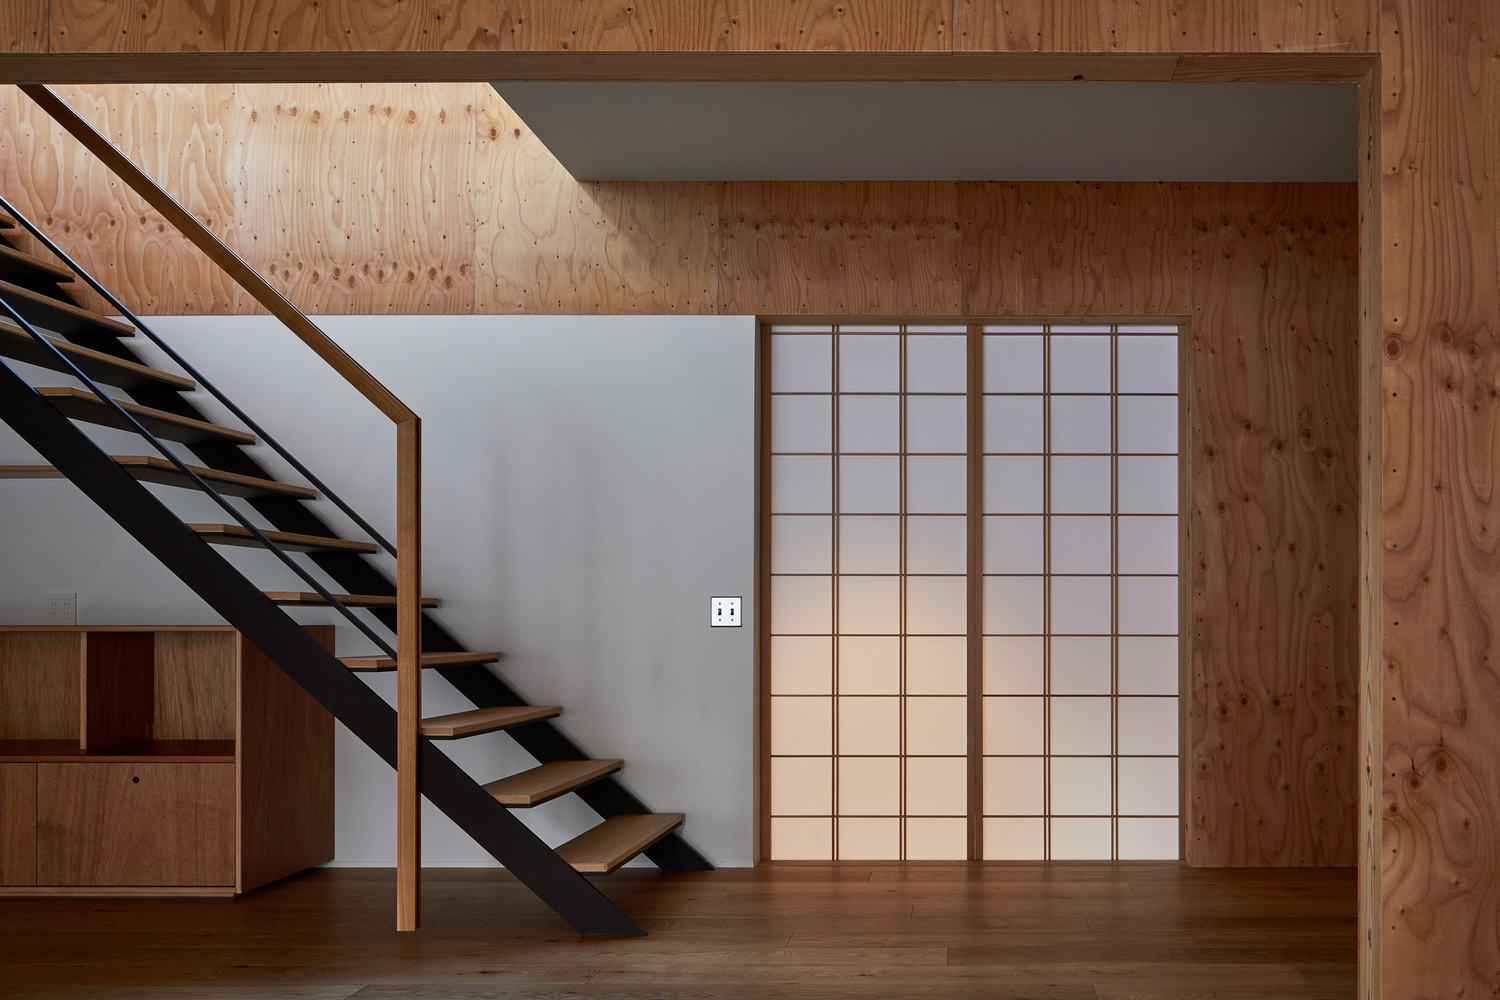 Cầu thang nhỏ gọn với thiết kế bậc hở thông thoáng, dẫn lối lên tầng trên ngôi nhà.